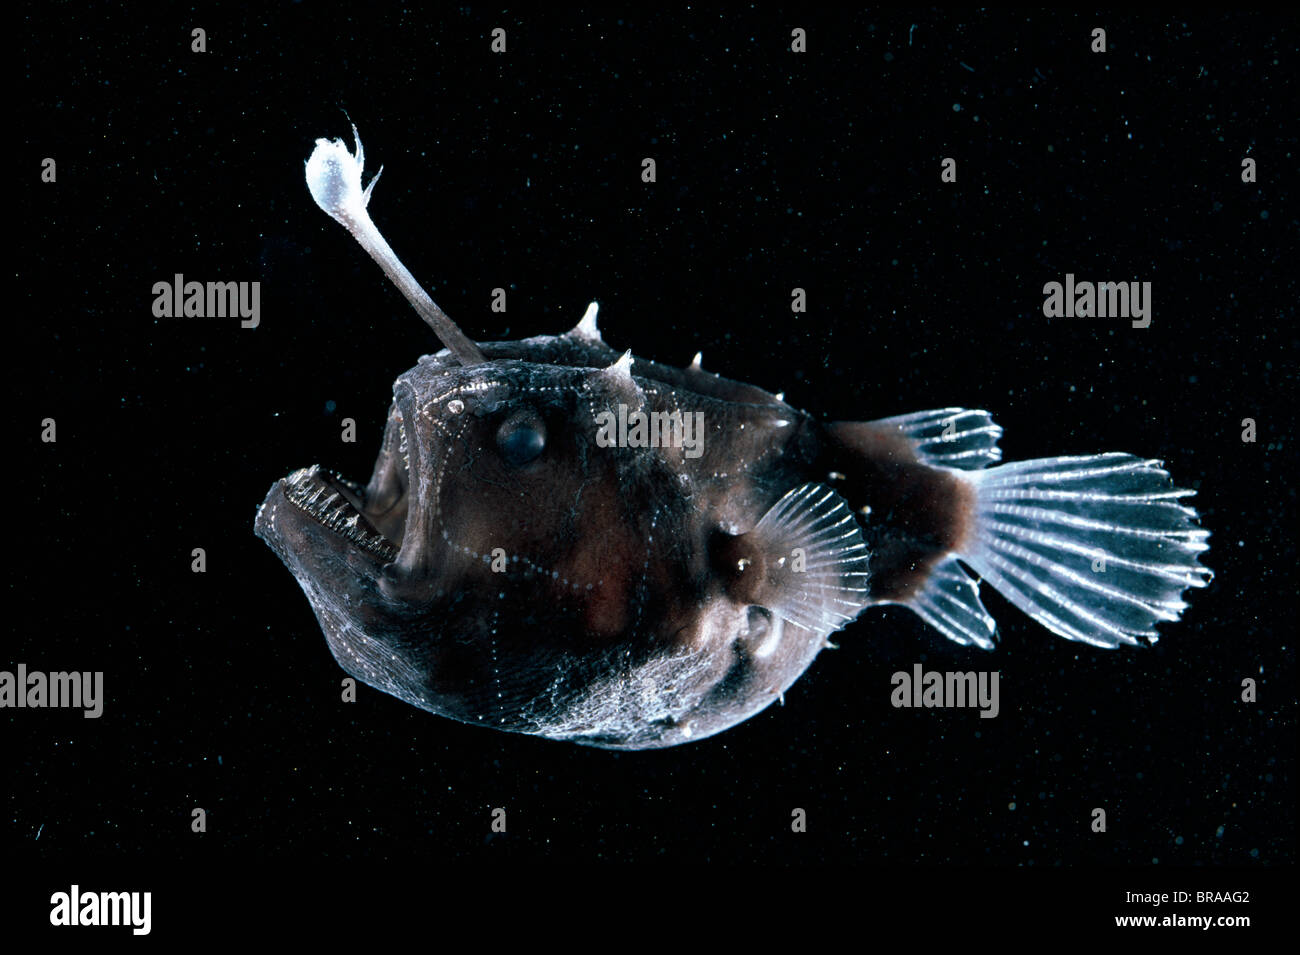 La lotte de mer profonde} {Himantolophus sp femelle avec la tête qui dépasse de l'appât pour attirer les proies, l'océan Atlantique. Banque D'Images